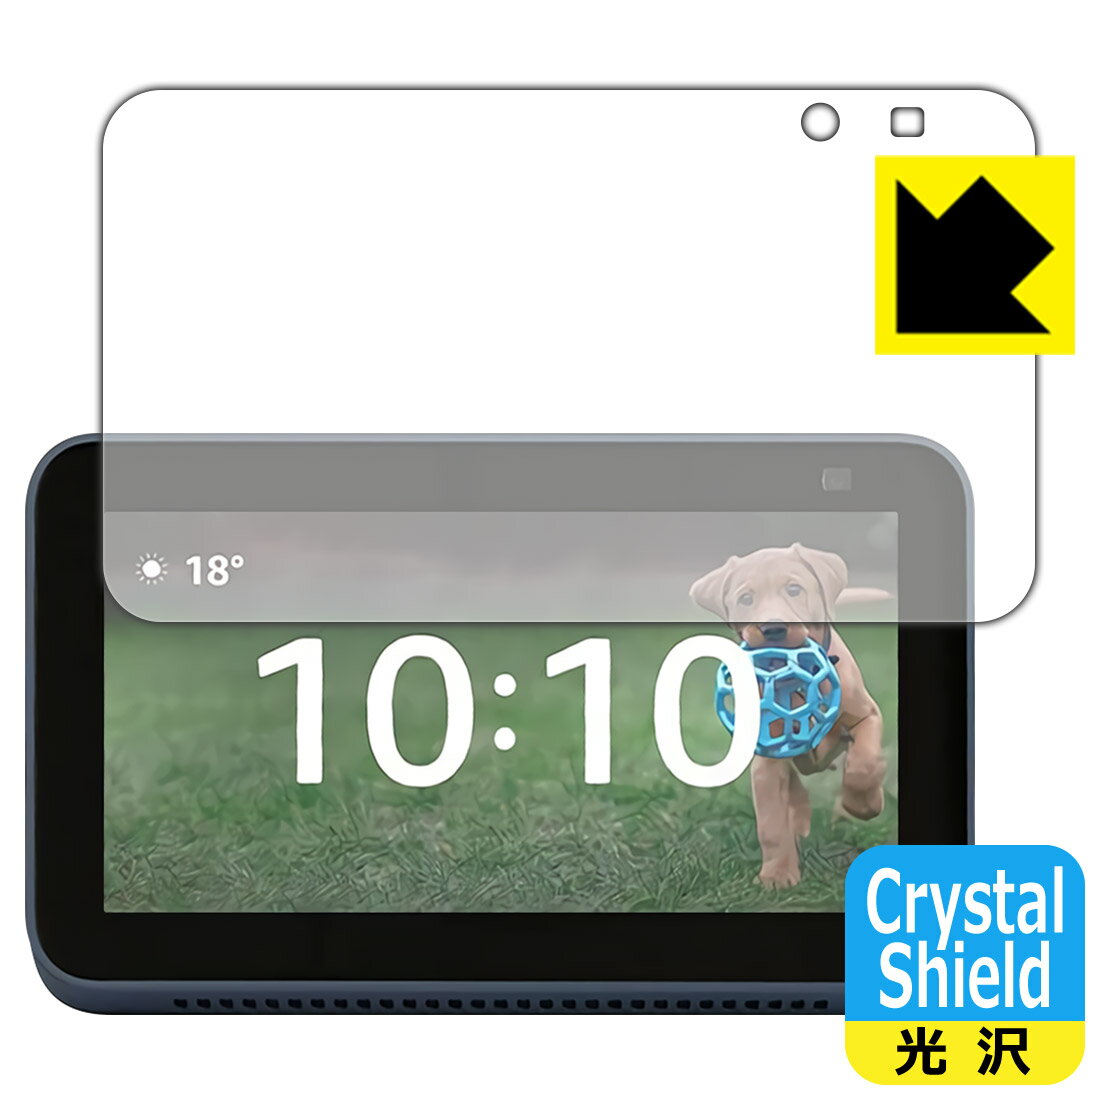 【1000円ポッキリ】【ポイント5倍】Crystal Shield Amazon Echo Show 5 (第2世代・2021年6月発売モデル) 日本製 自社製造直販 買いまわ..